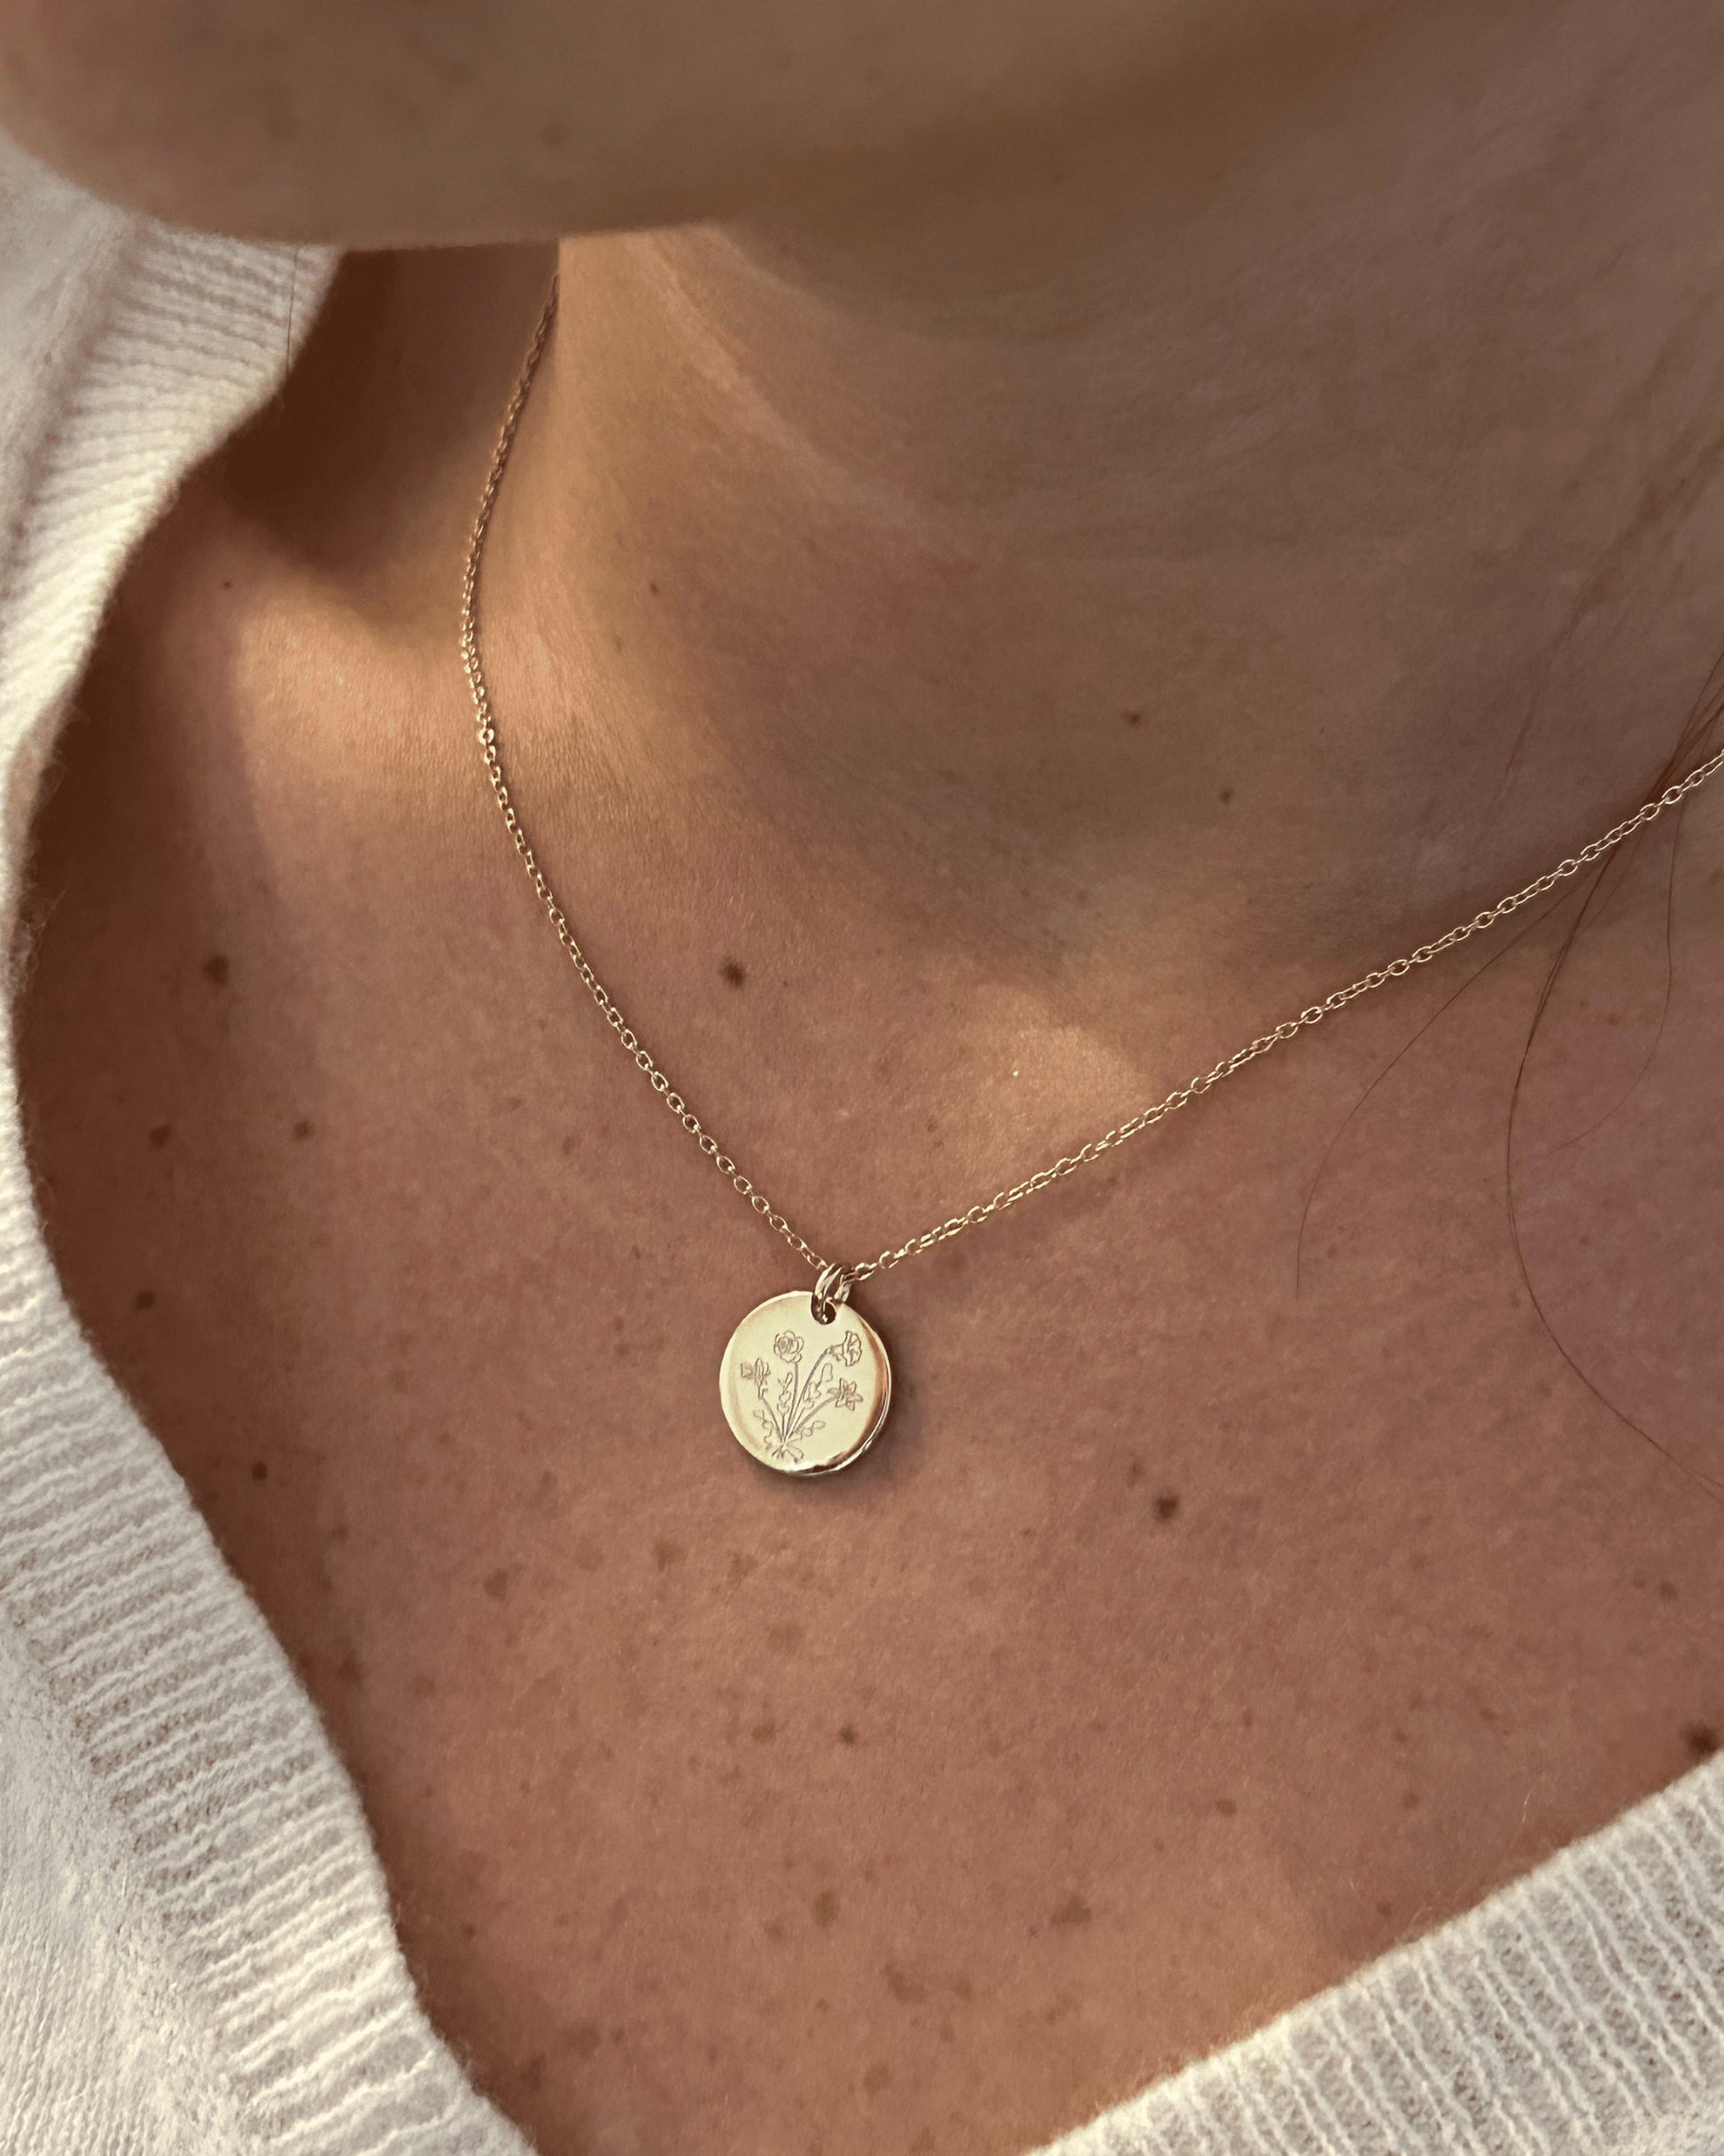 Bouquet Necklace - 18K Gold Vermeil Necklaces magal-dev 